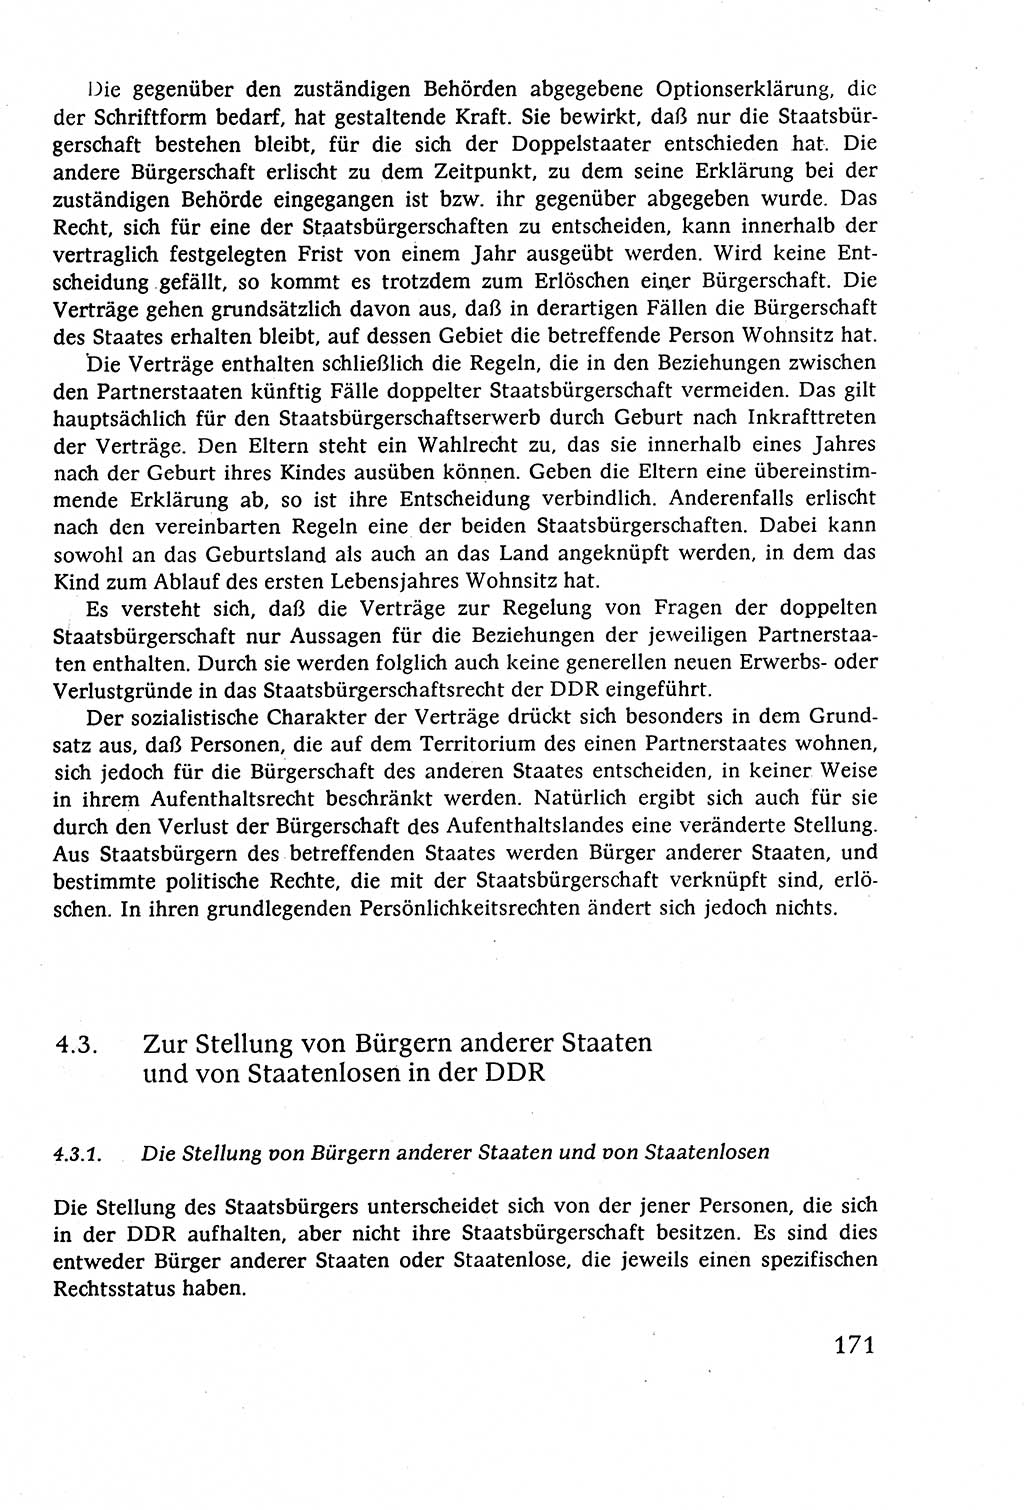 Staatsrecht der DDR (Deutsche Demokratische Republik), Lehrbuch 1977, Seite 171 (St.-R. DDR Lb. 1977, S. 171)